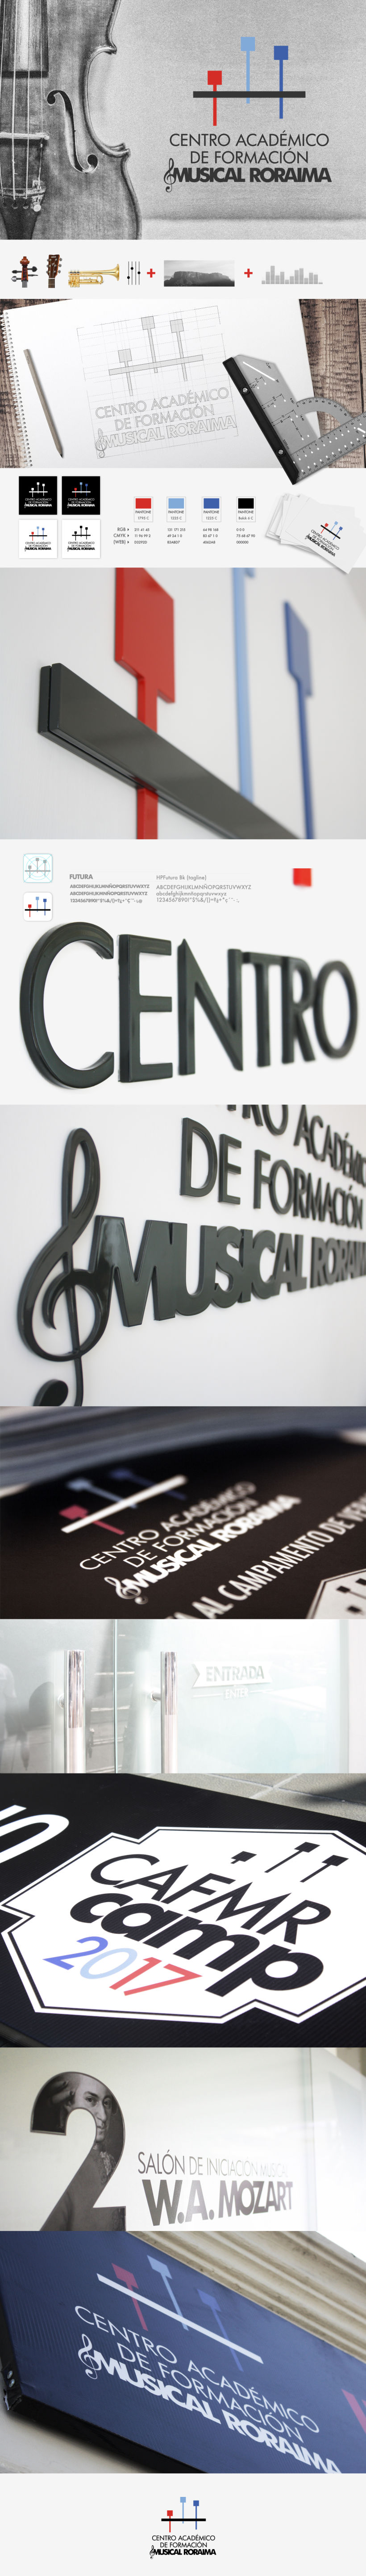 Centro académico de formación musical roraima -1